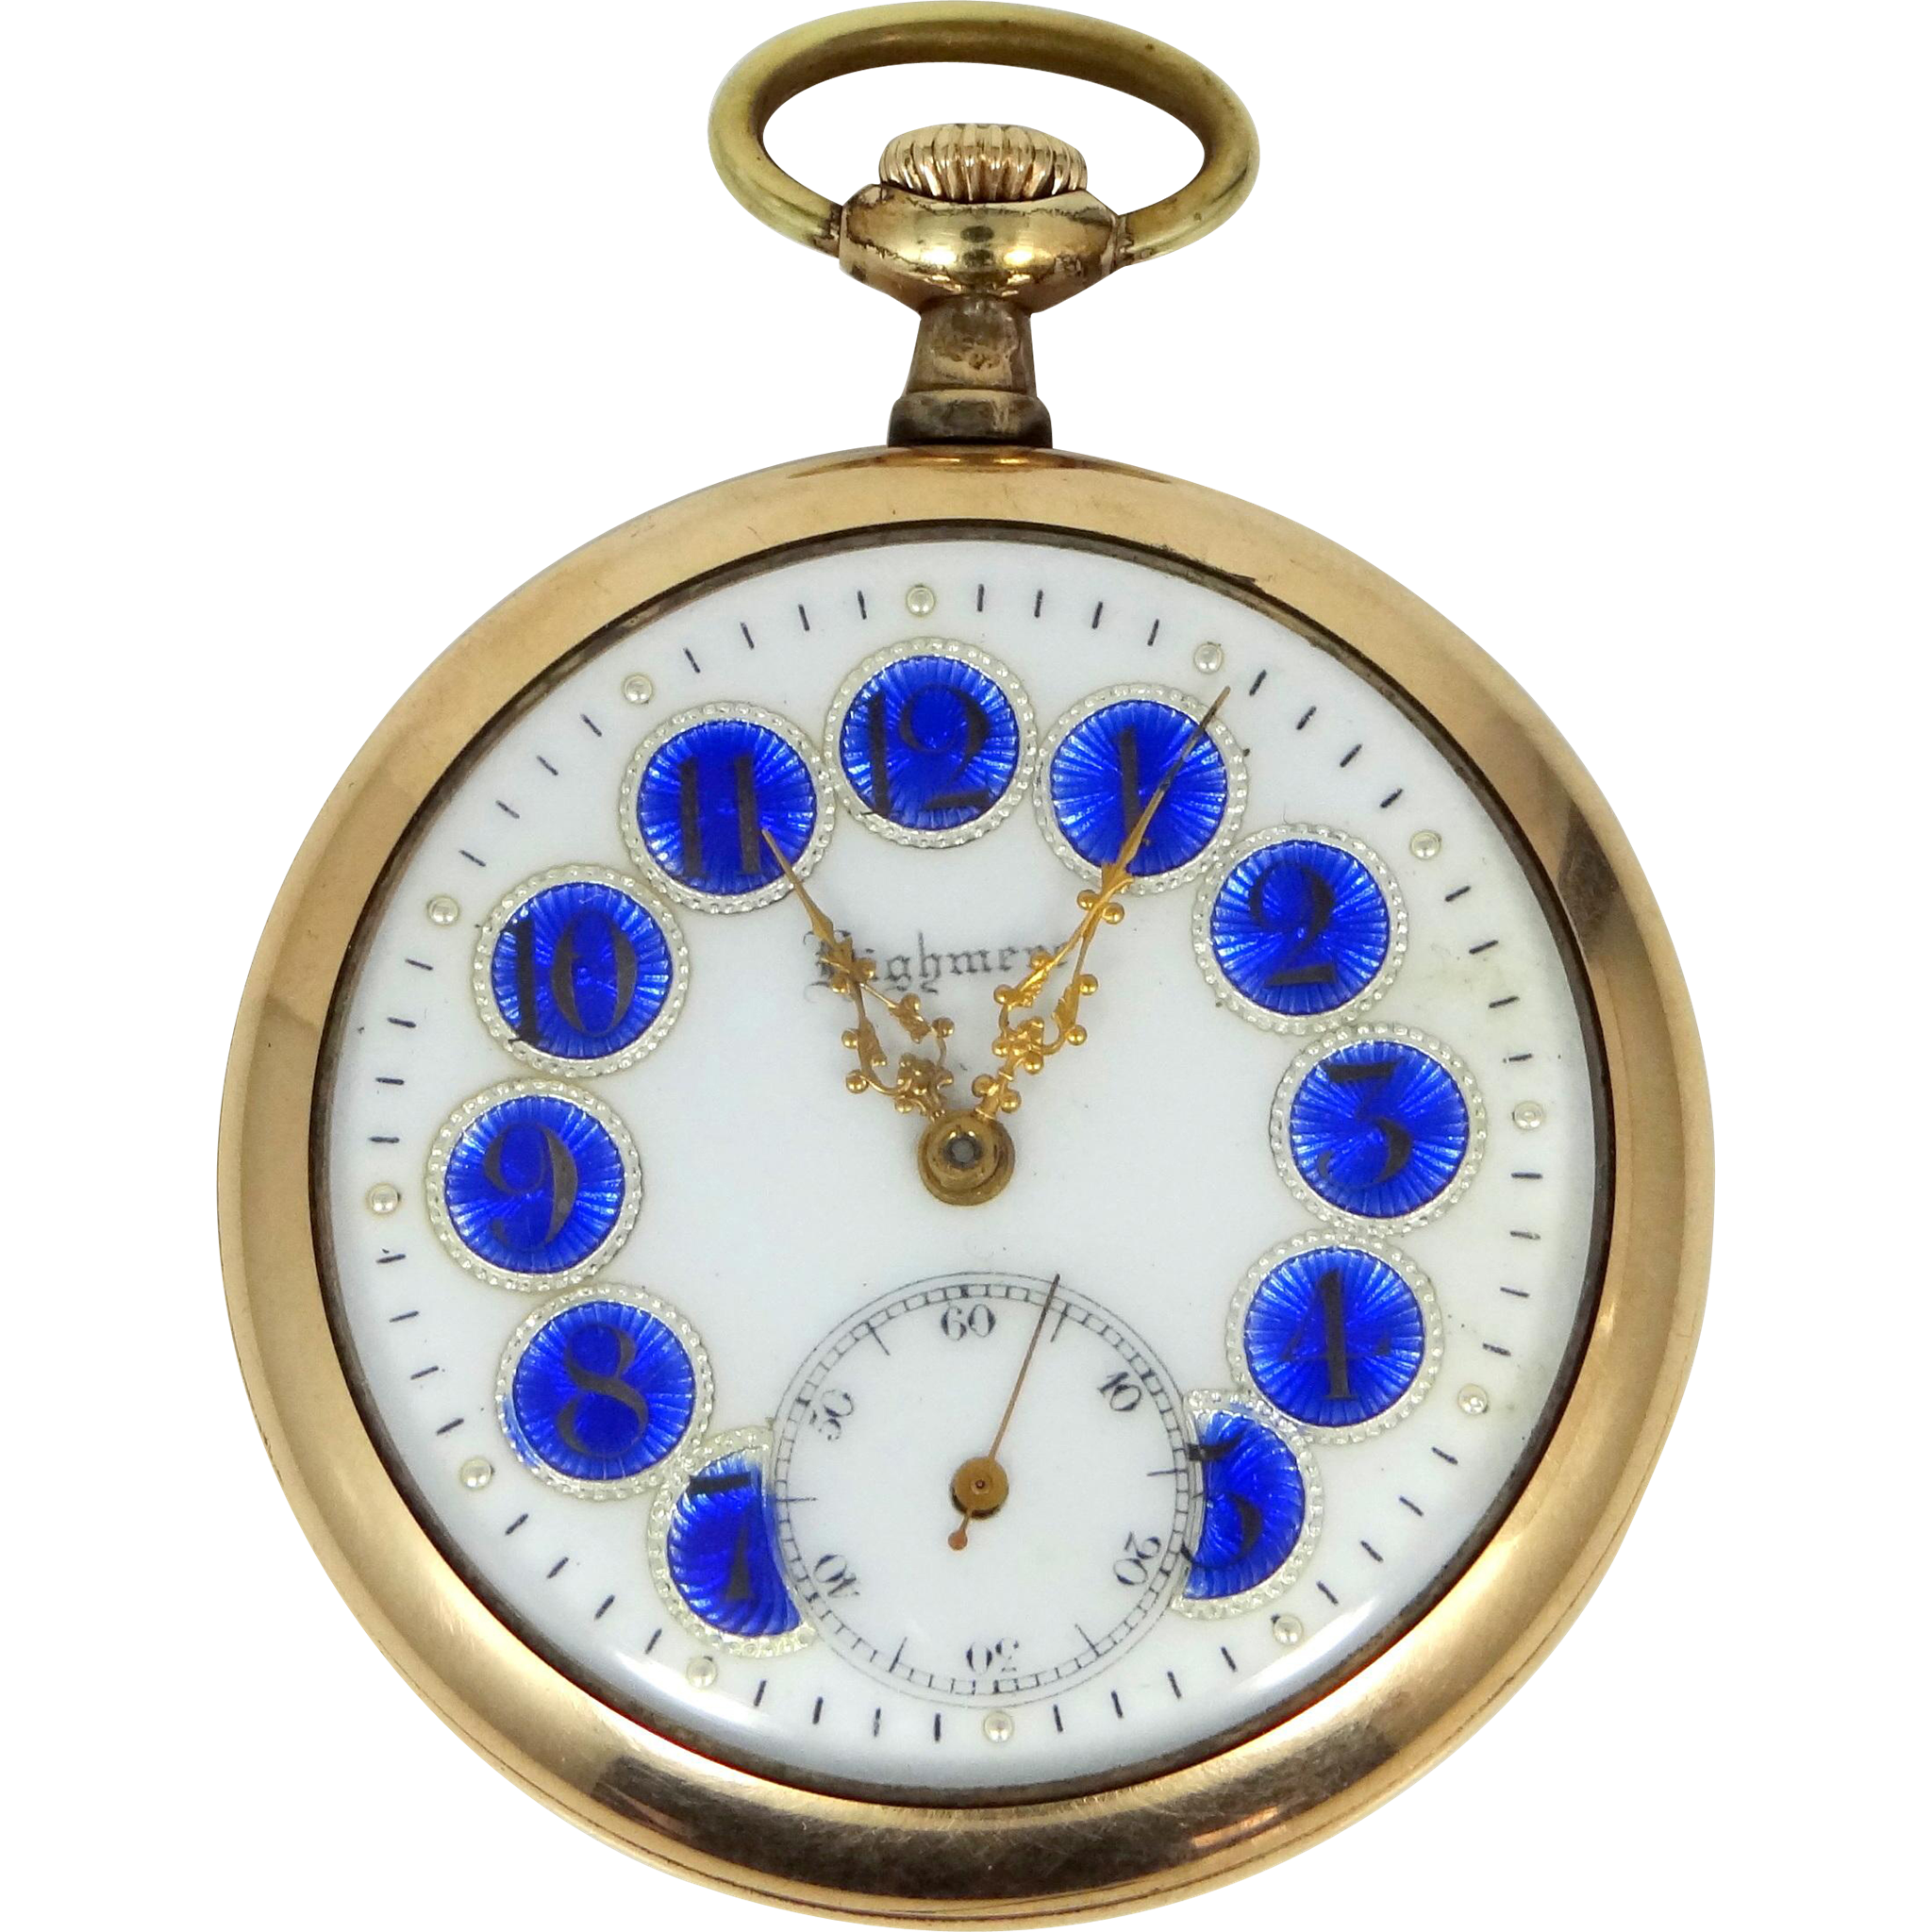 Highmere 17 Jewel Cobalt Blue Enamel Dial Pocket Watch : Mur-Sadie's ...